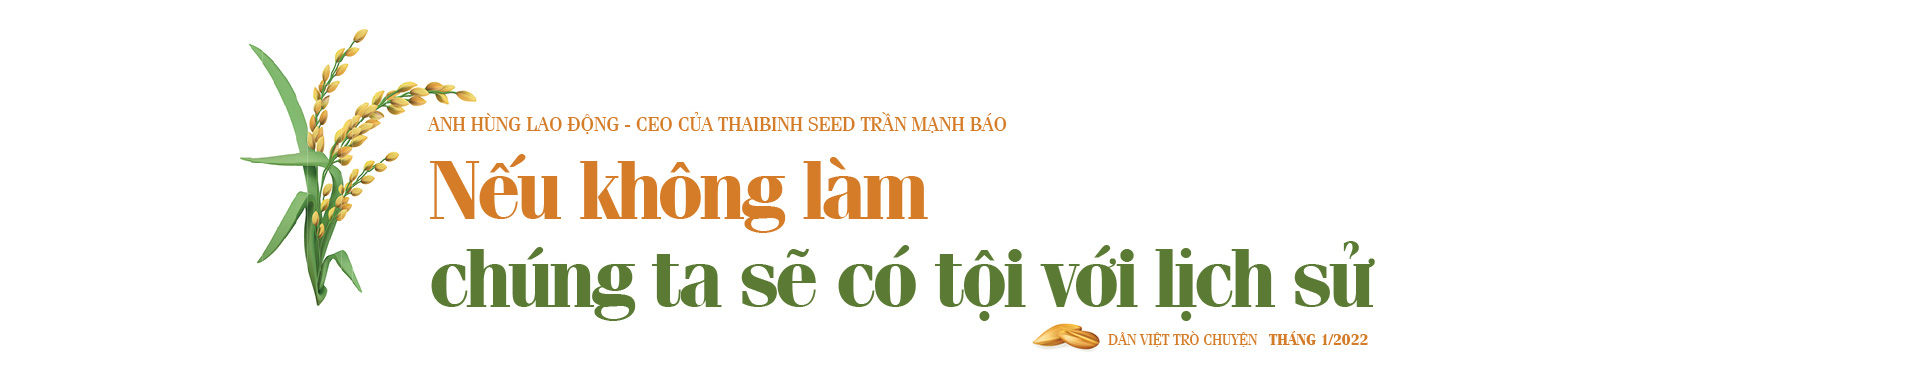 Anh hùng Lao động- CEO của ThaiBinh Seed Trần Mạnh Báo: Viết tiếp hành trình Người nông dân mới  - Ảnh 13.